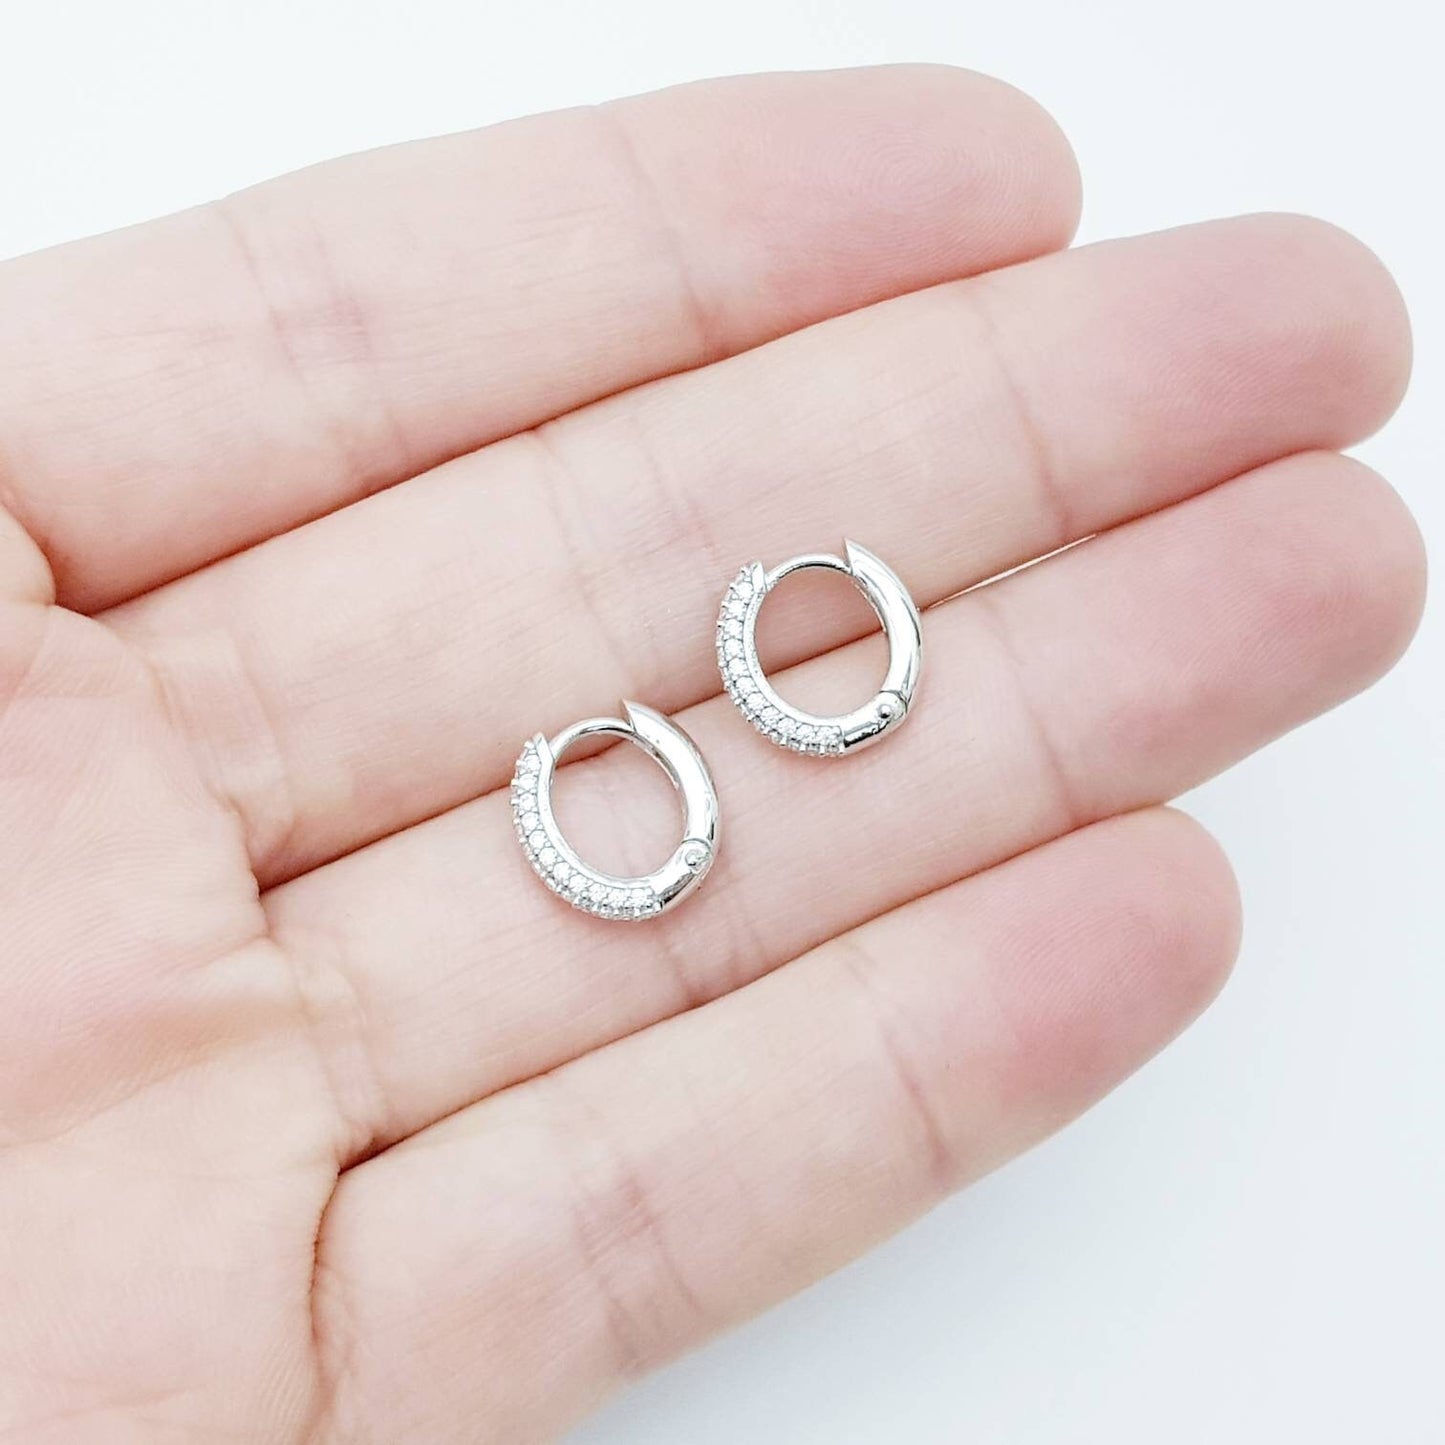 Small hoop earrings, silver huggie earrings, faux diamond huggies, cute diamond hoops